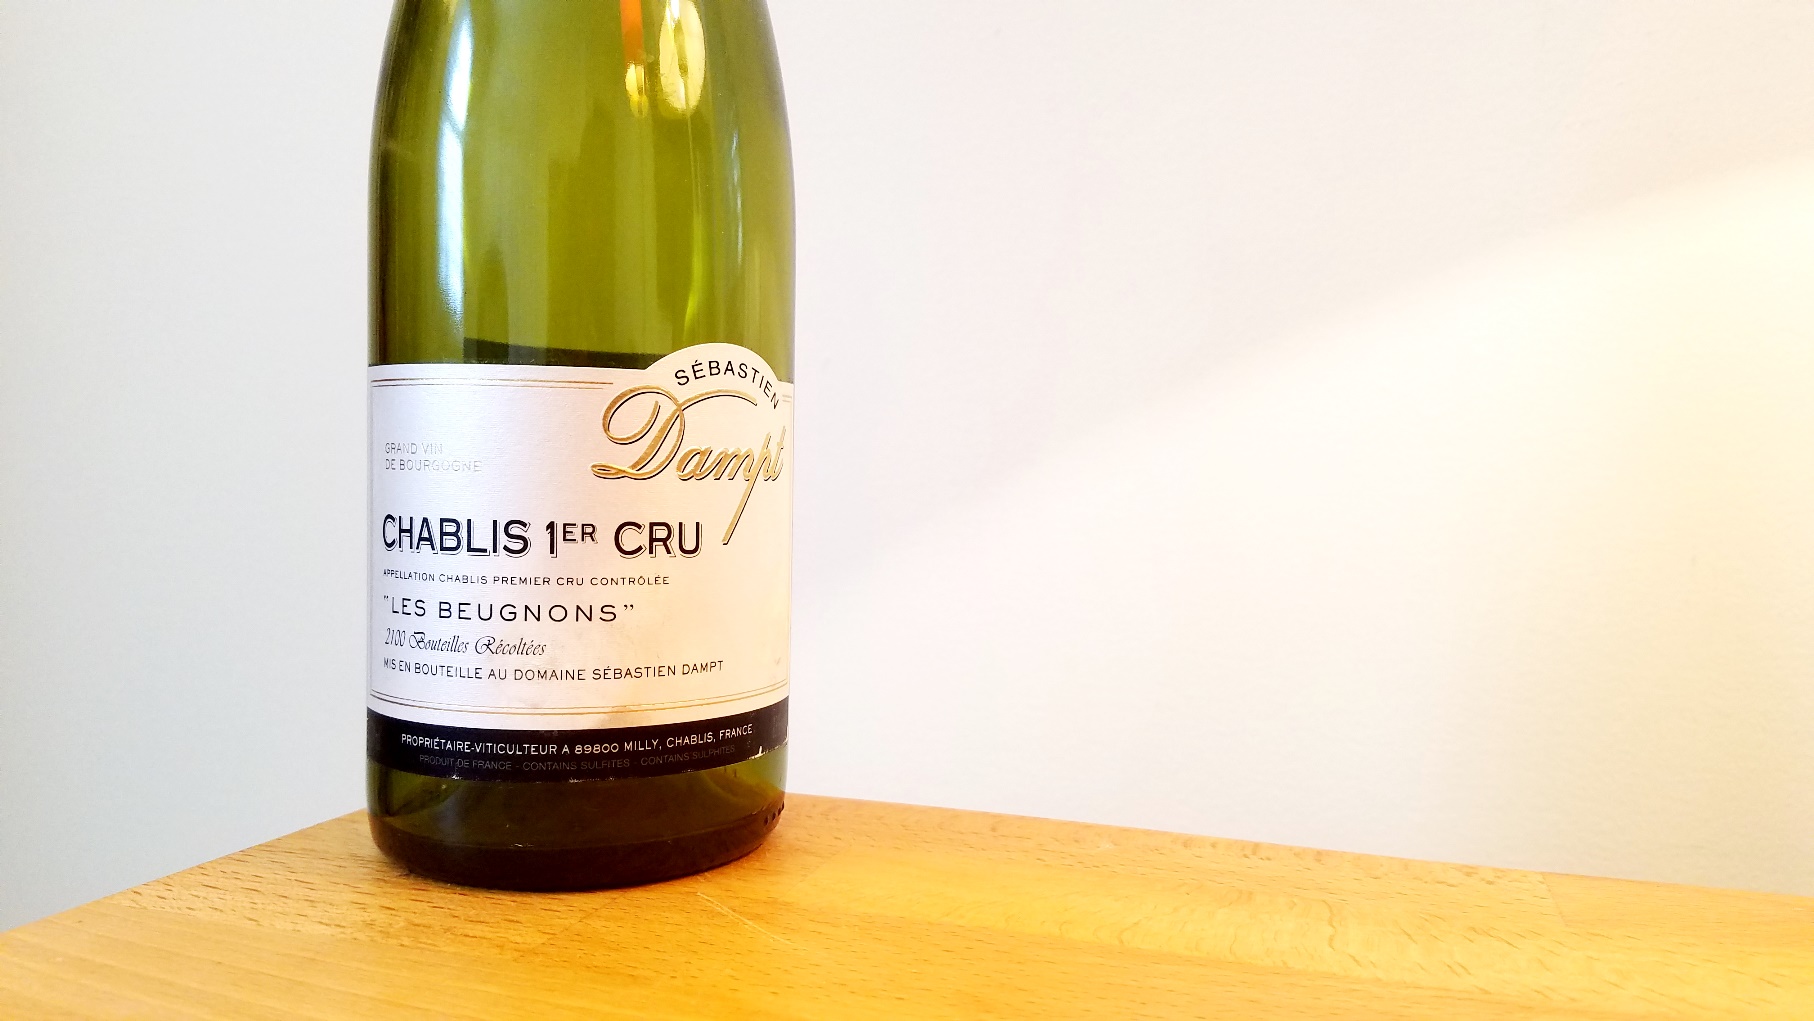 Sébastien Dampt, Les Beugnons Premier Cru Chablis 2015, Burgundy, France, Wine Casual